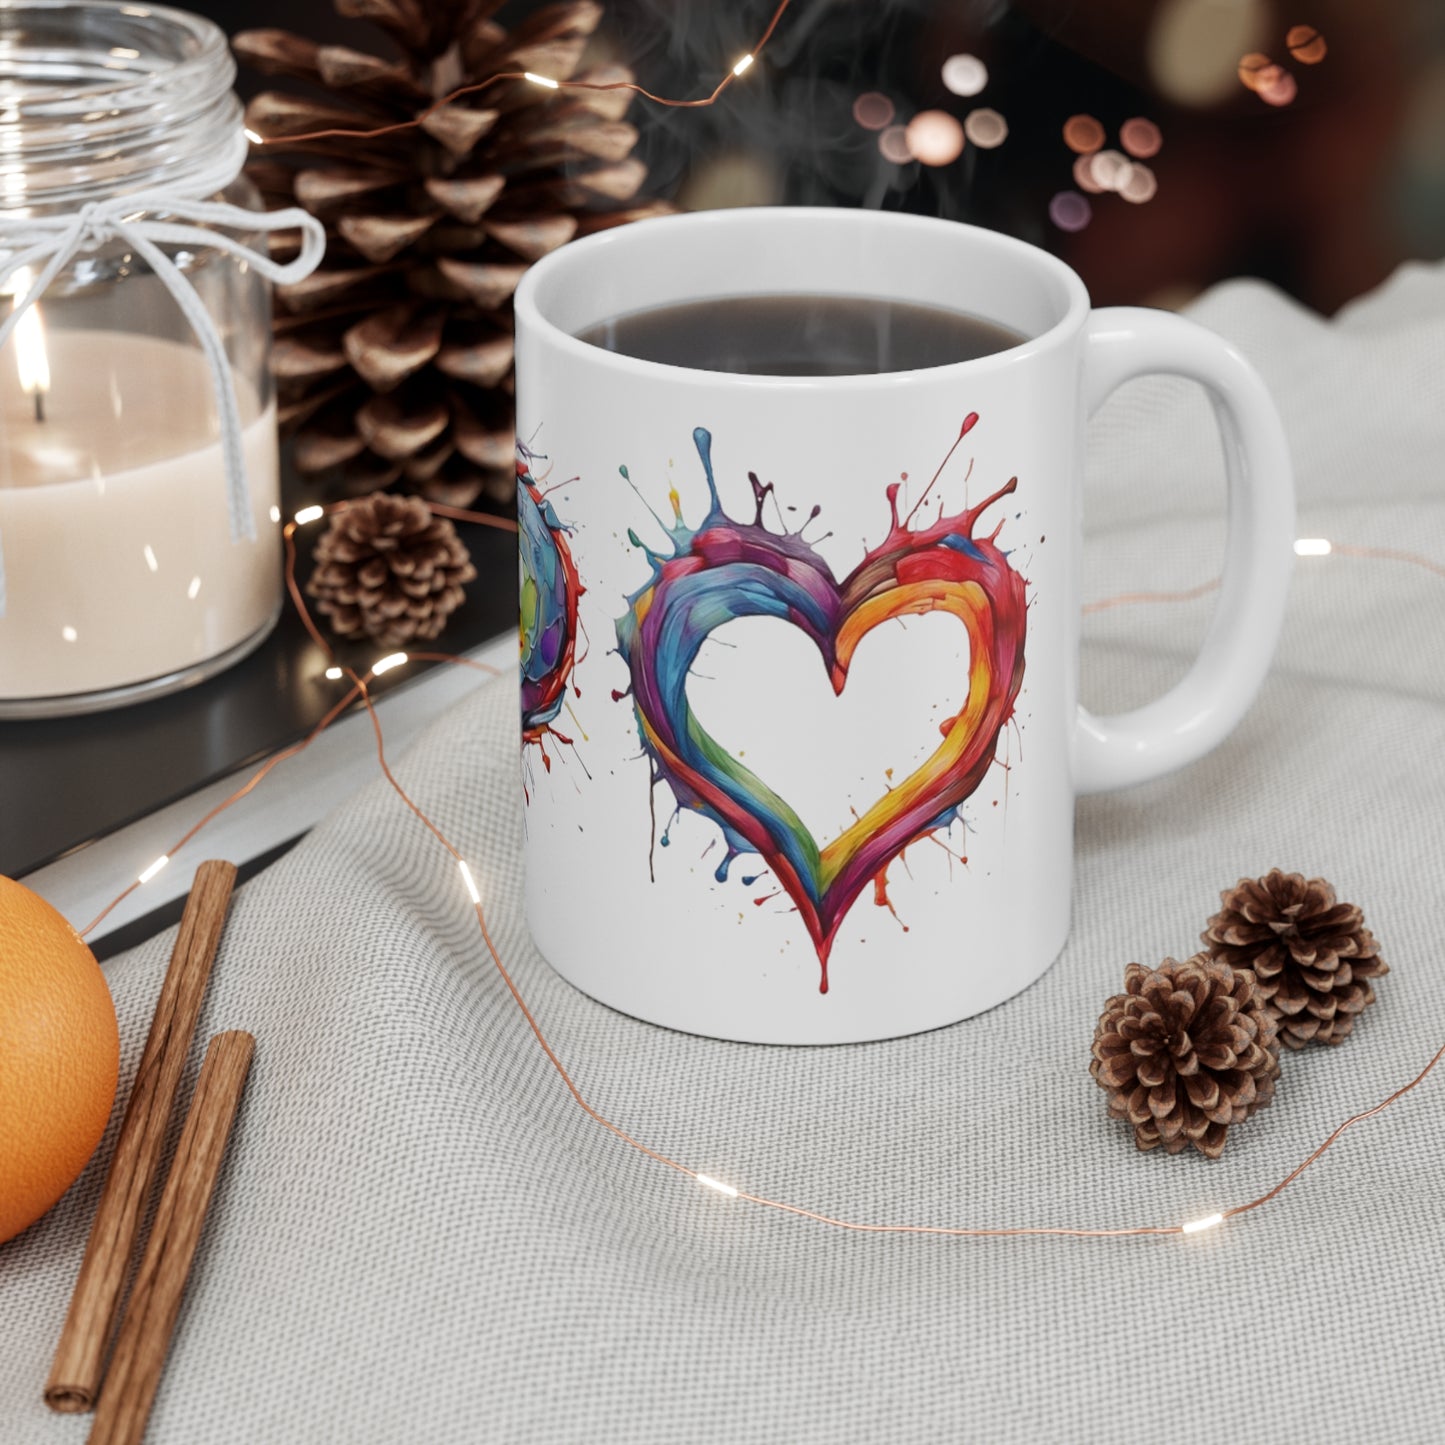 Colourful Love Hearts Mug - Ceramic Coffee Mug 11oz